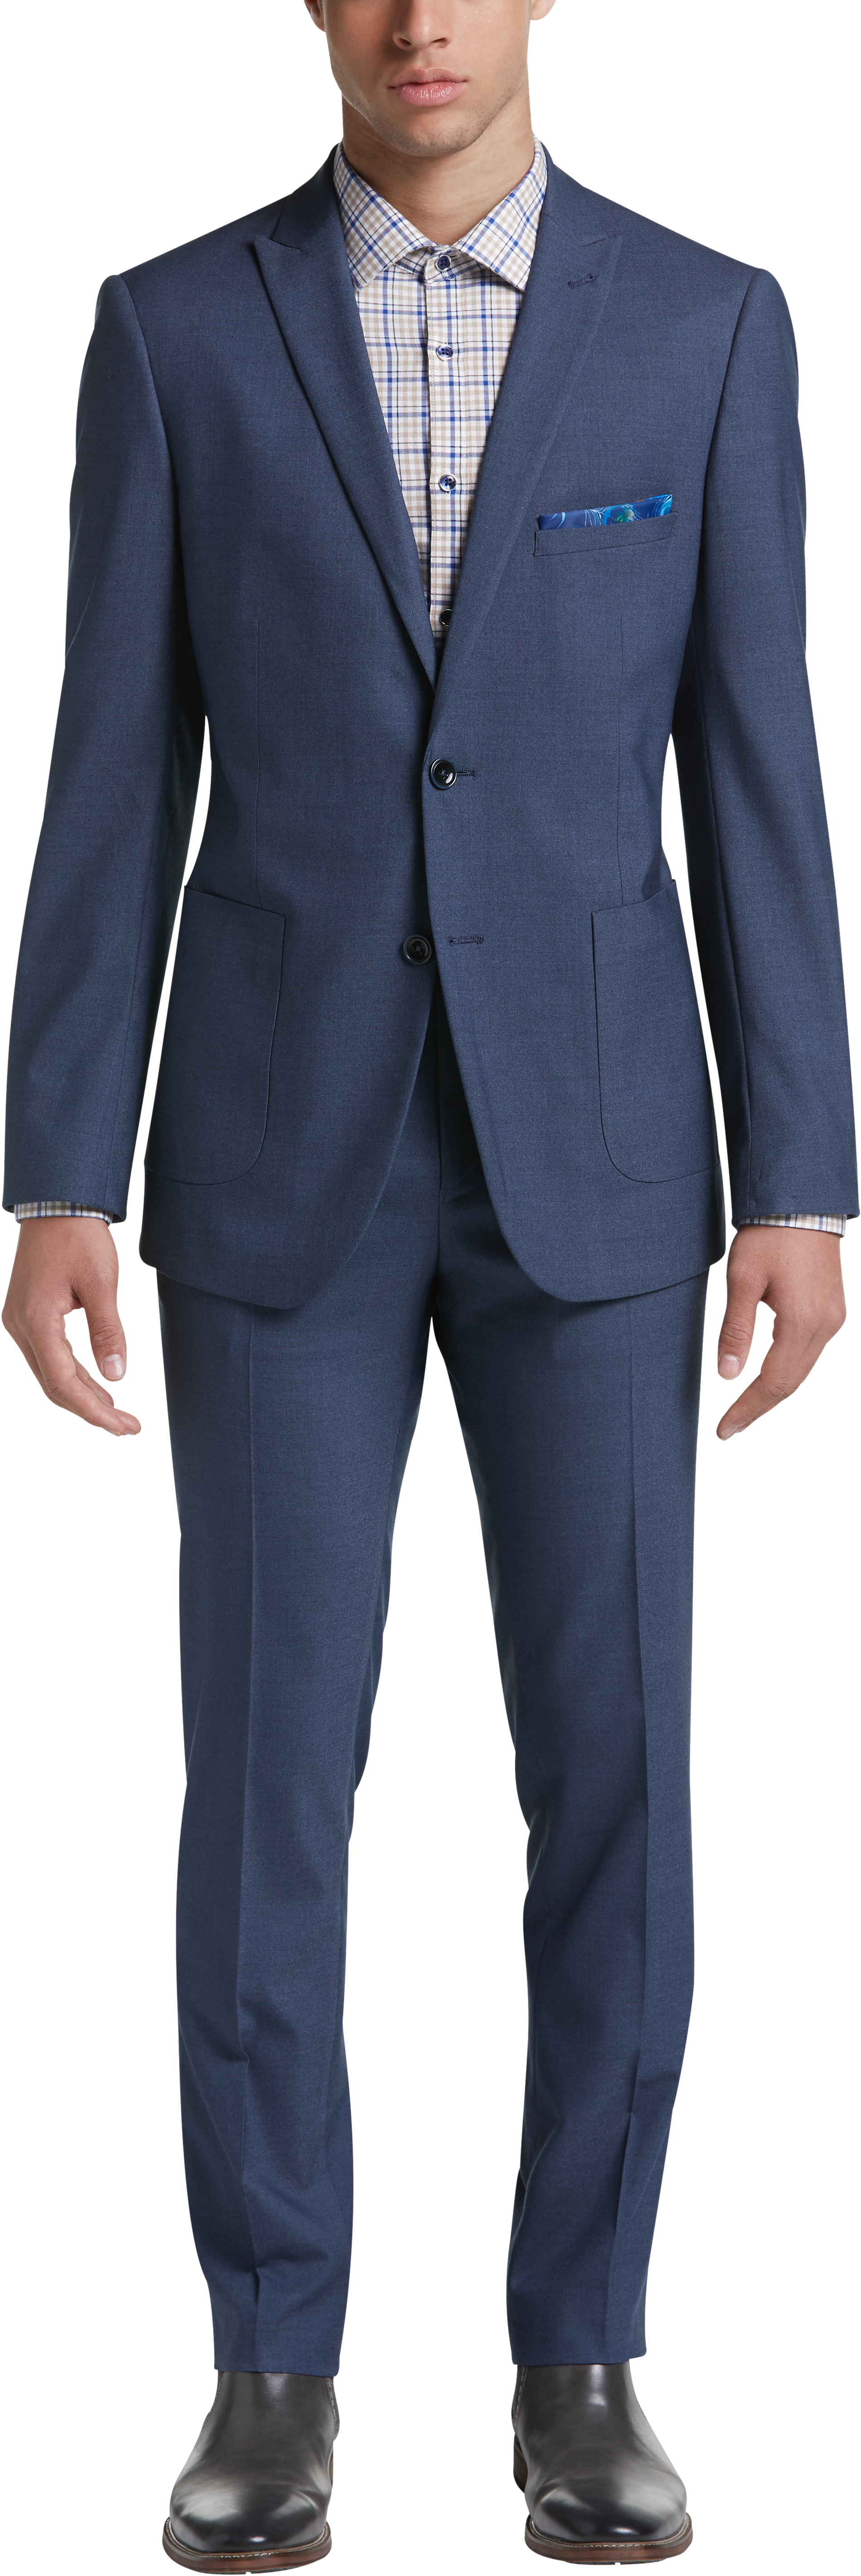 Paisley & Gray Suit Separates Coat, Blue Gray - Men's Suits | Men's ...